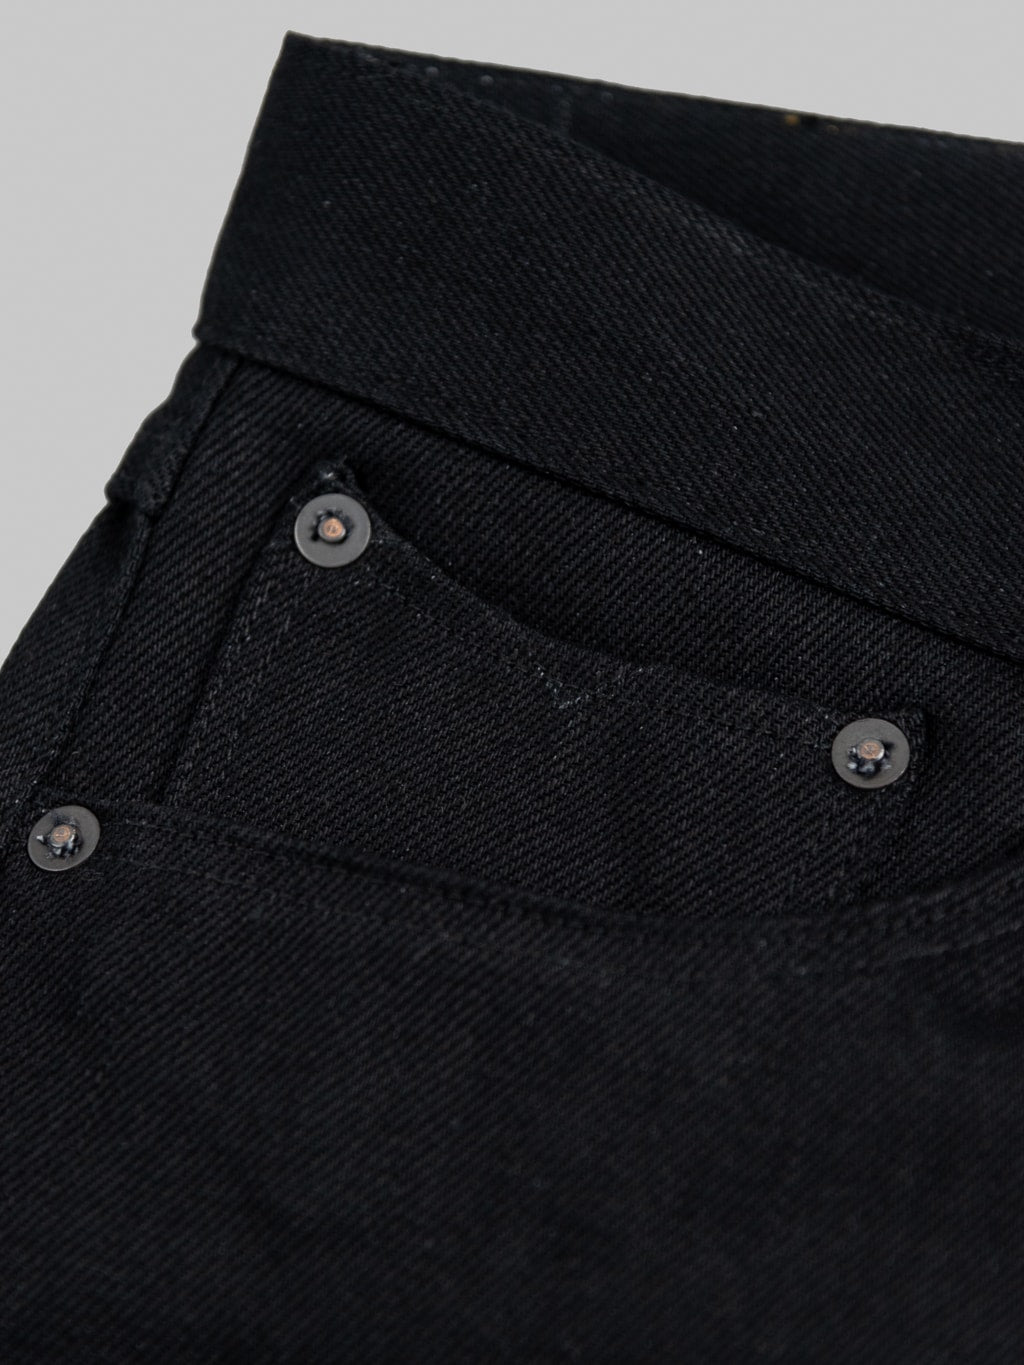 Stevenson Overall Big Sur 210 Slim Tapered jeans solid black coin pocket